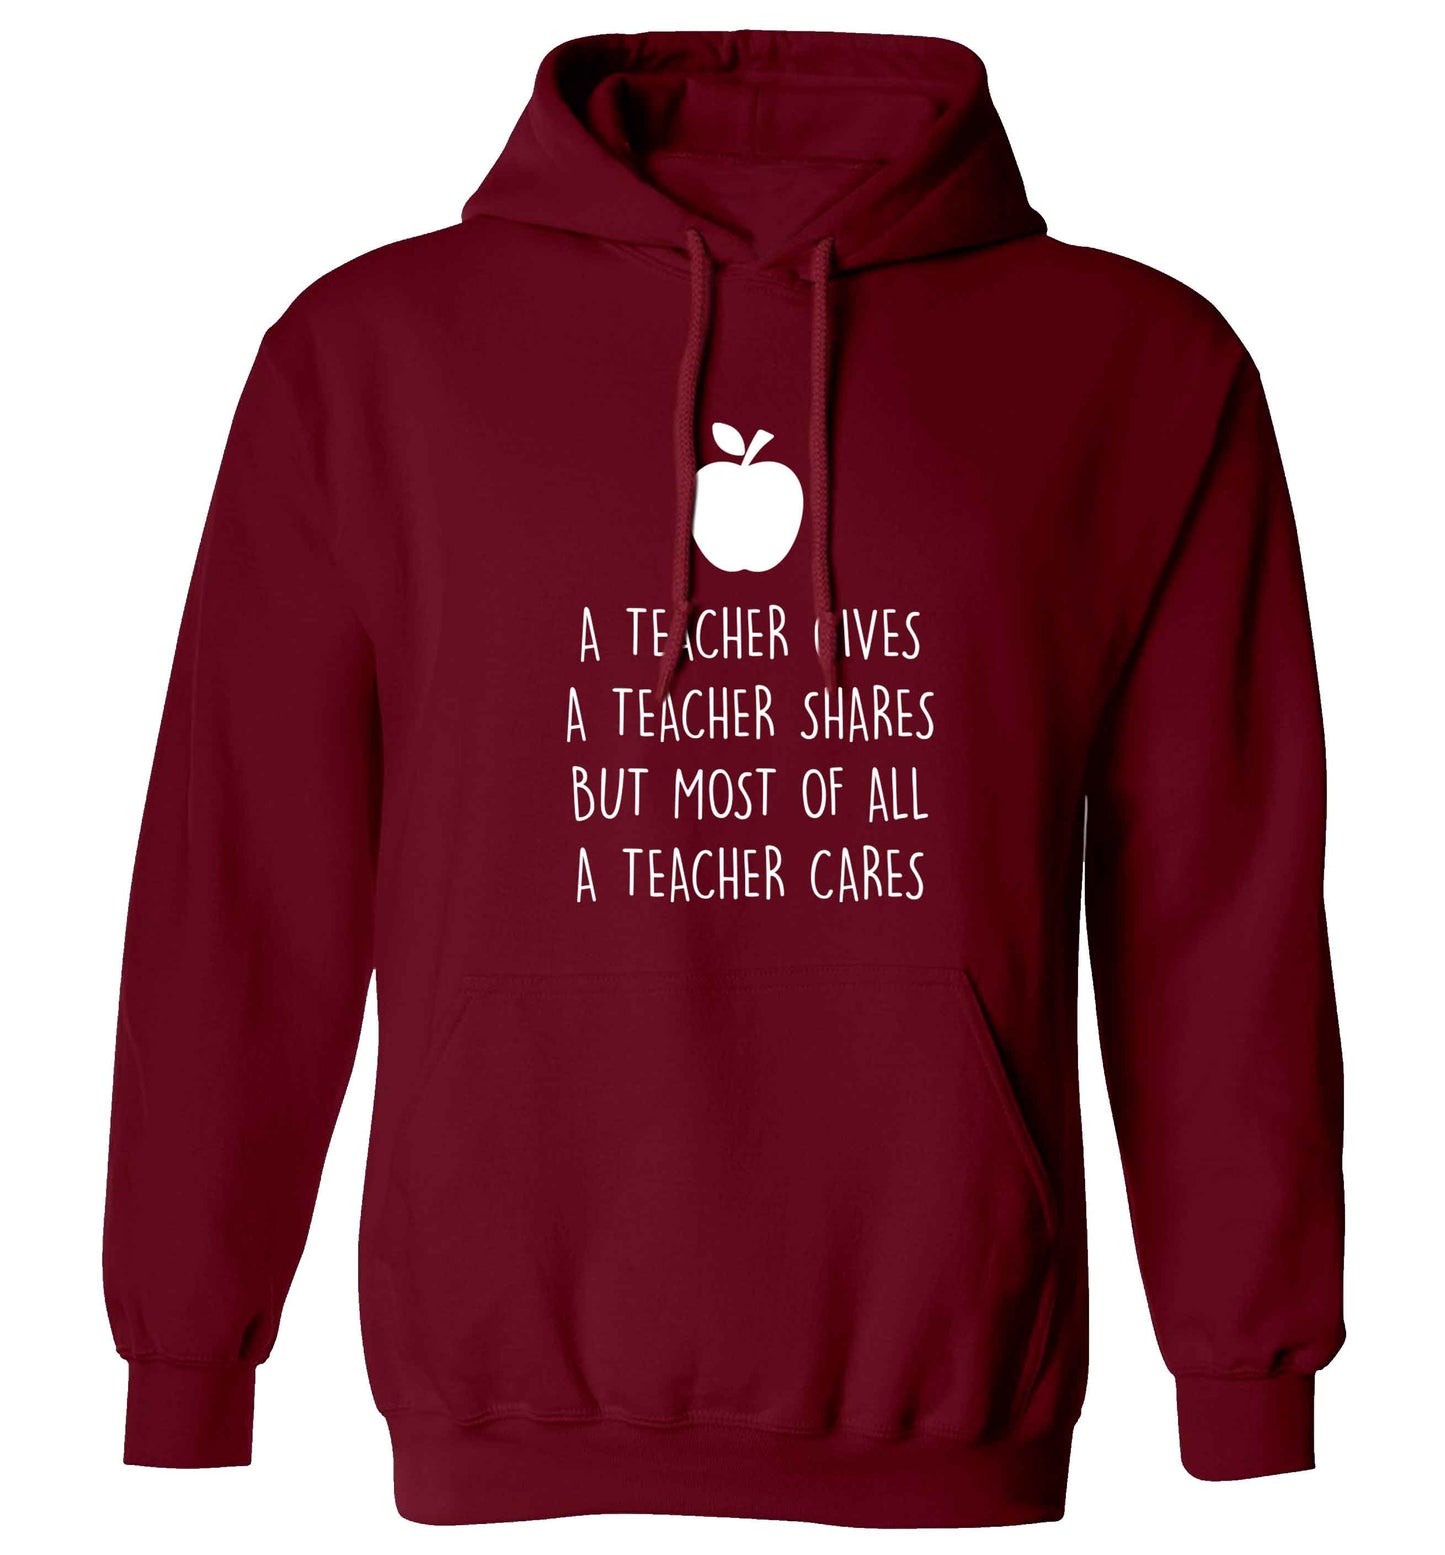 A teacher gives a teacher shares but most of all a teacher cares adults unisex maroon hoodie 2XL